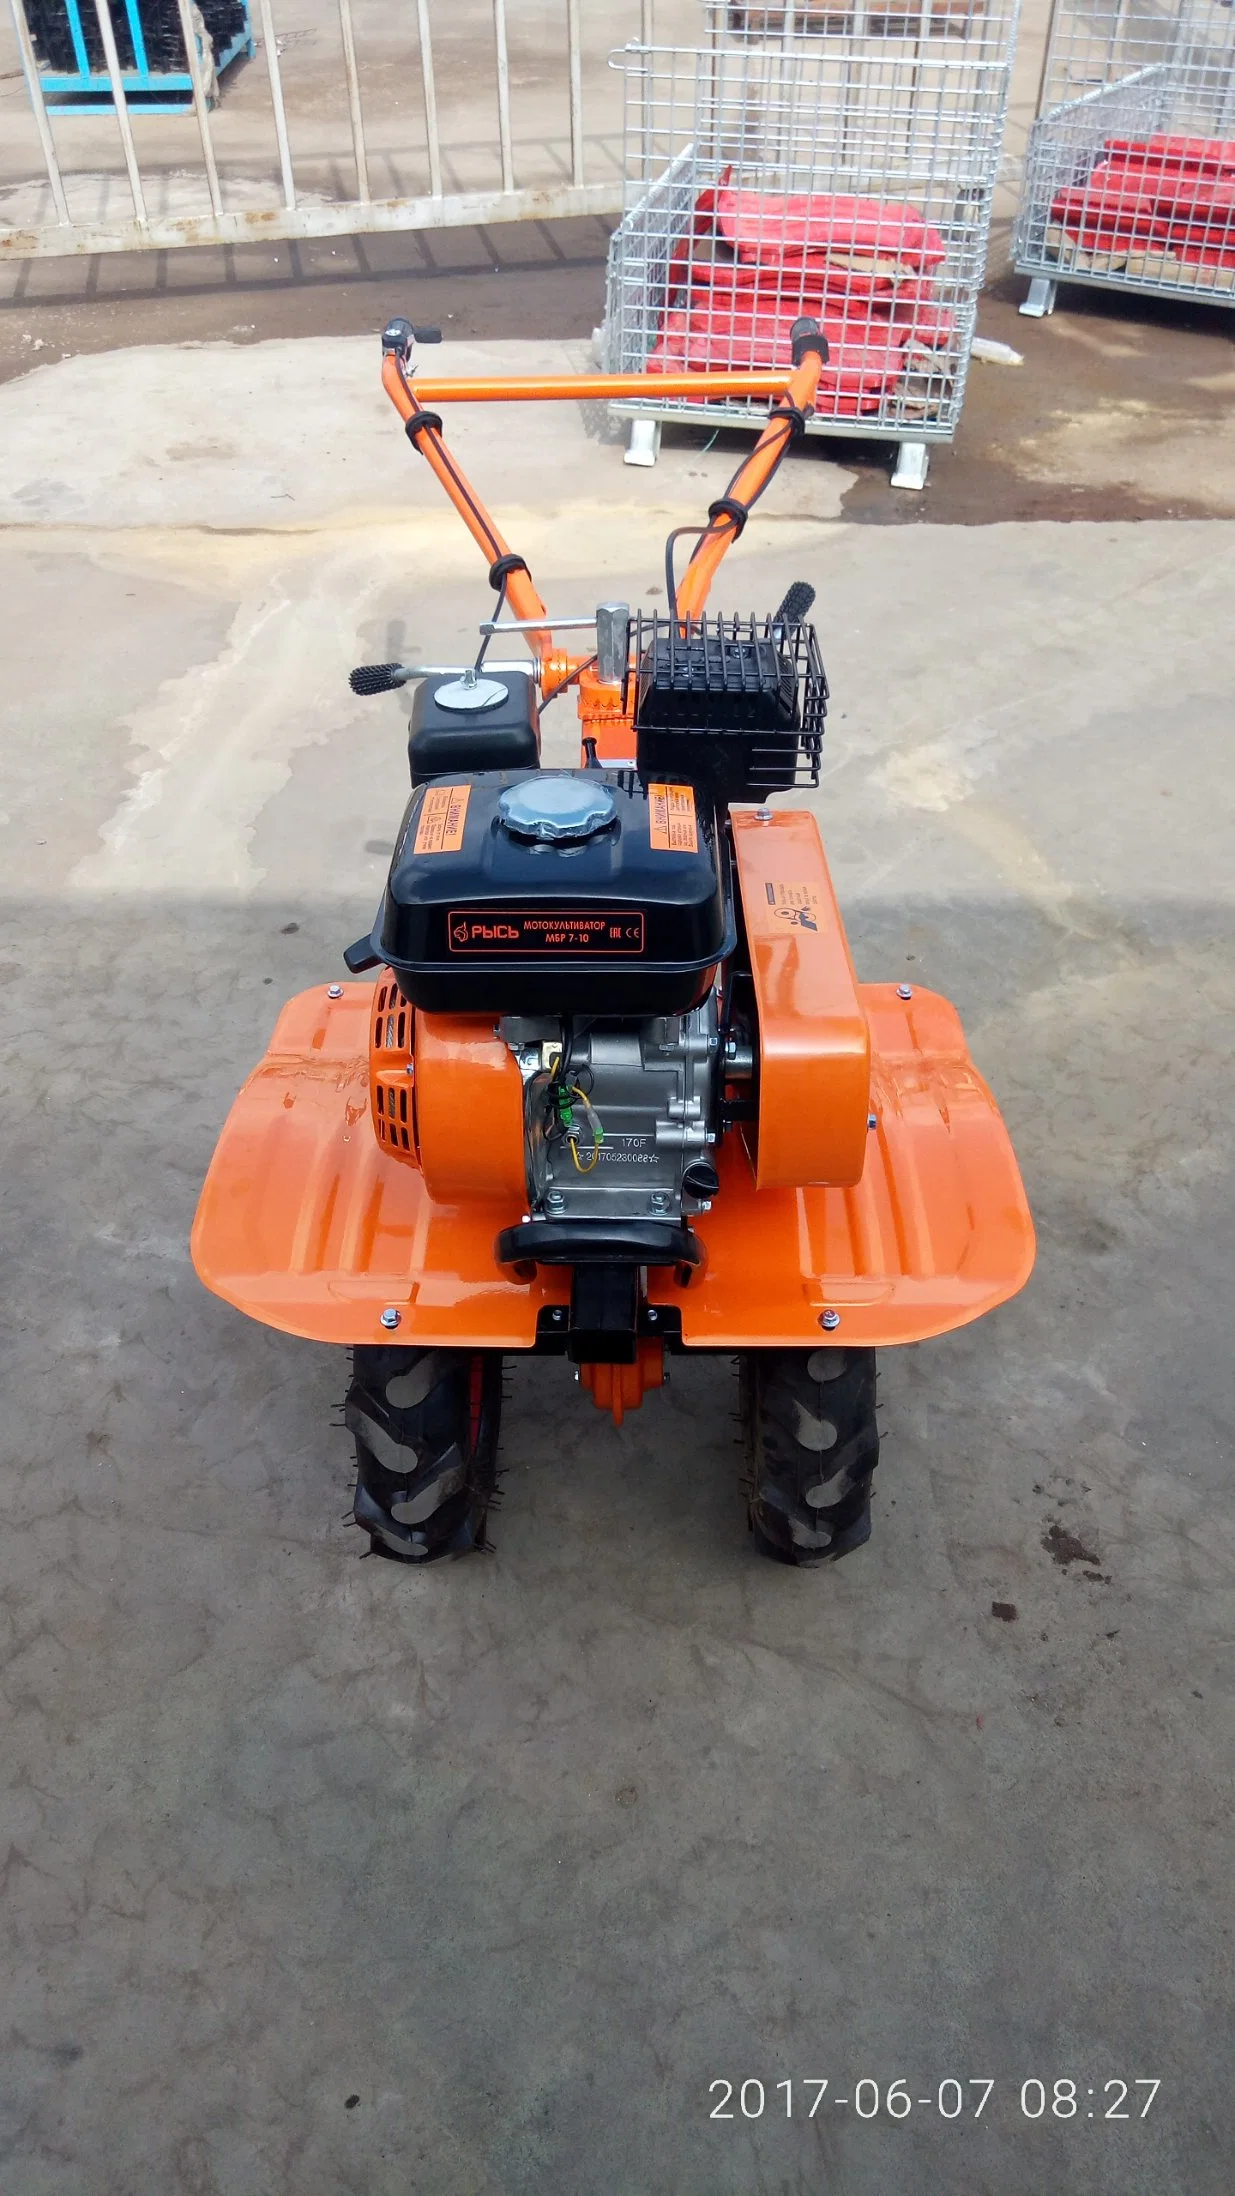 170f Bia Power Tiller Agricultural Tractor Tool (инструмент для сельскохозяйственного